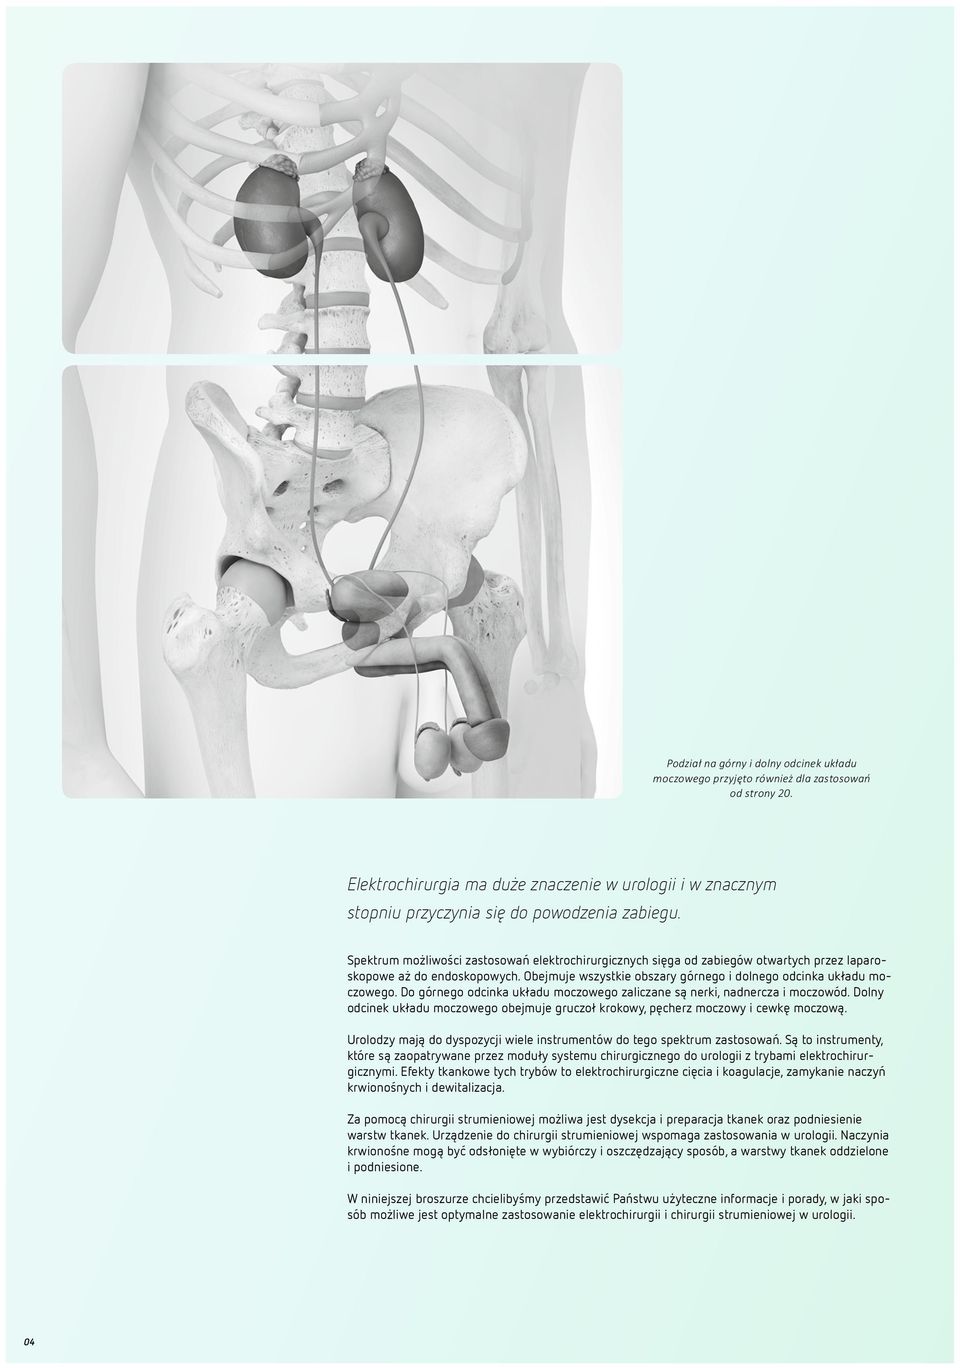 Do górnego odcinka układu moczowego zaliczane są nerki, nadnercza i moczowód. Dolny odcinek układu moczowego obejmuje gruczoł krokowy, pęcherz moczowy i cewkę moczową.